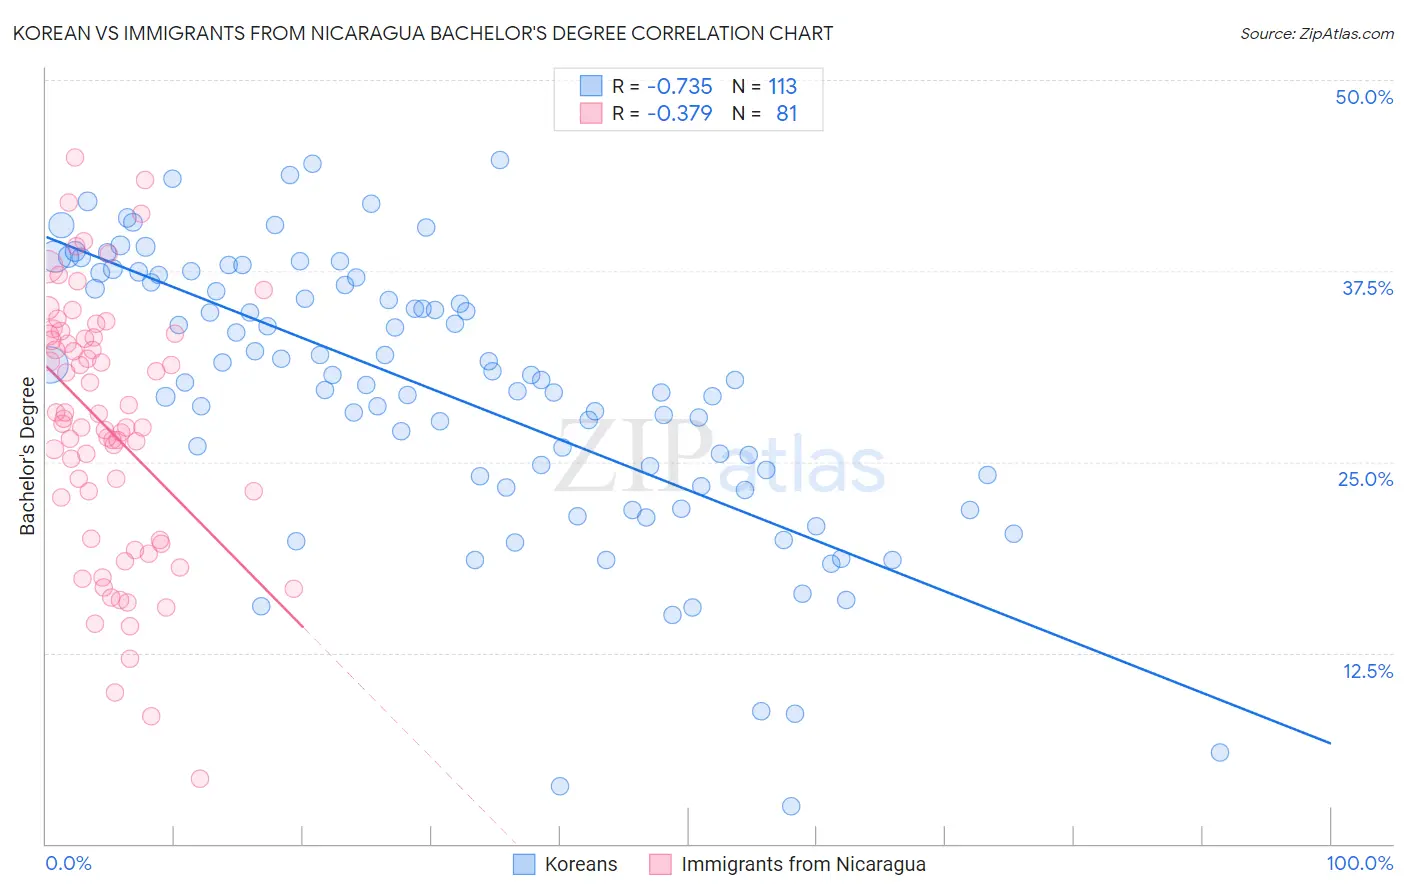 Korean vs Immigrants from Nicaragua Bachelor's Degree